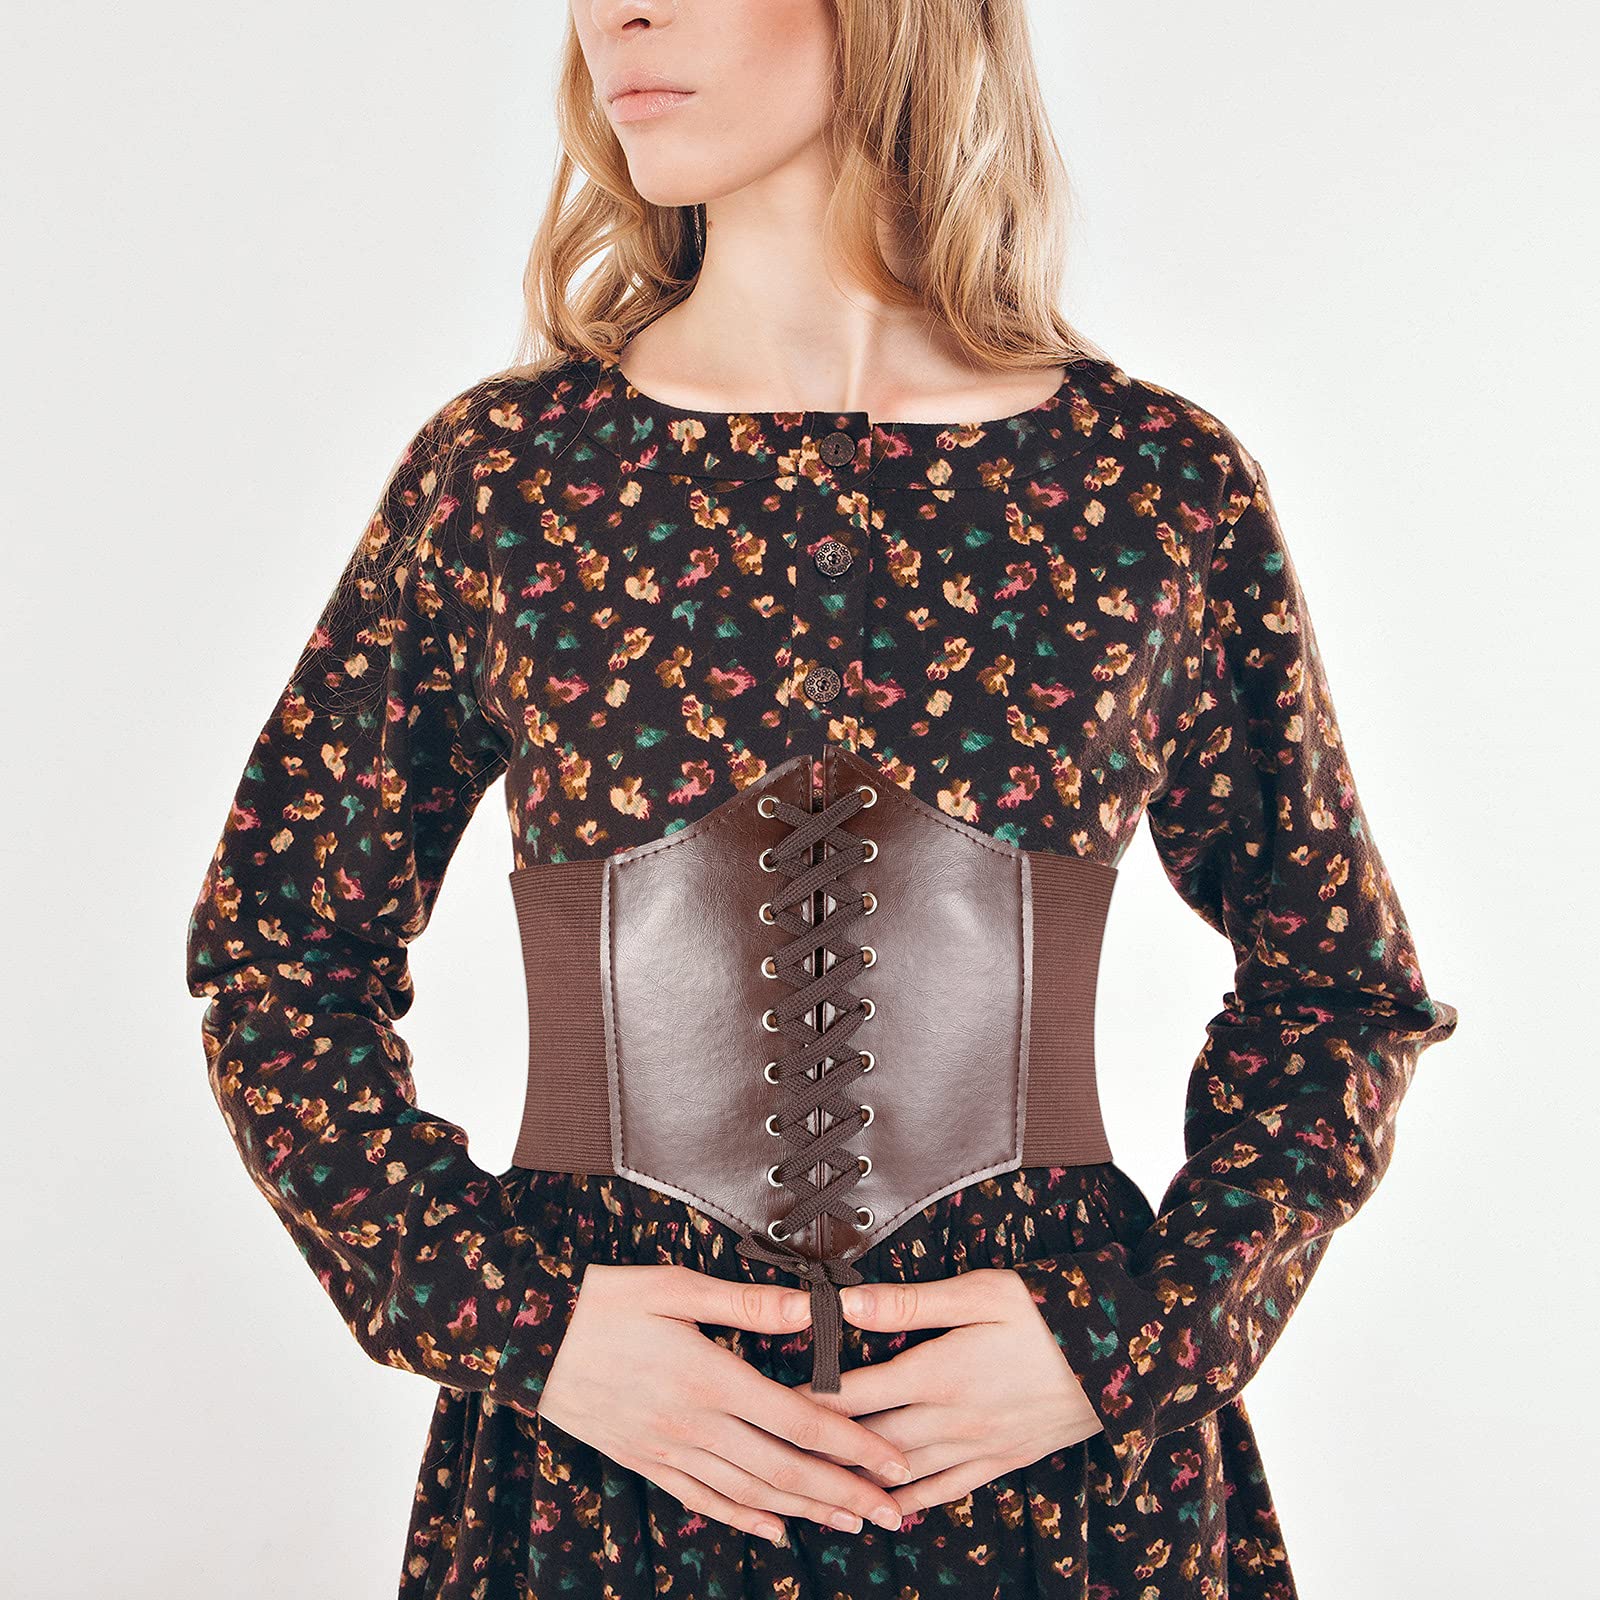 Brown elastic waist corset